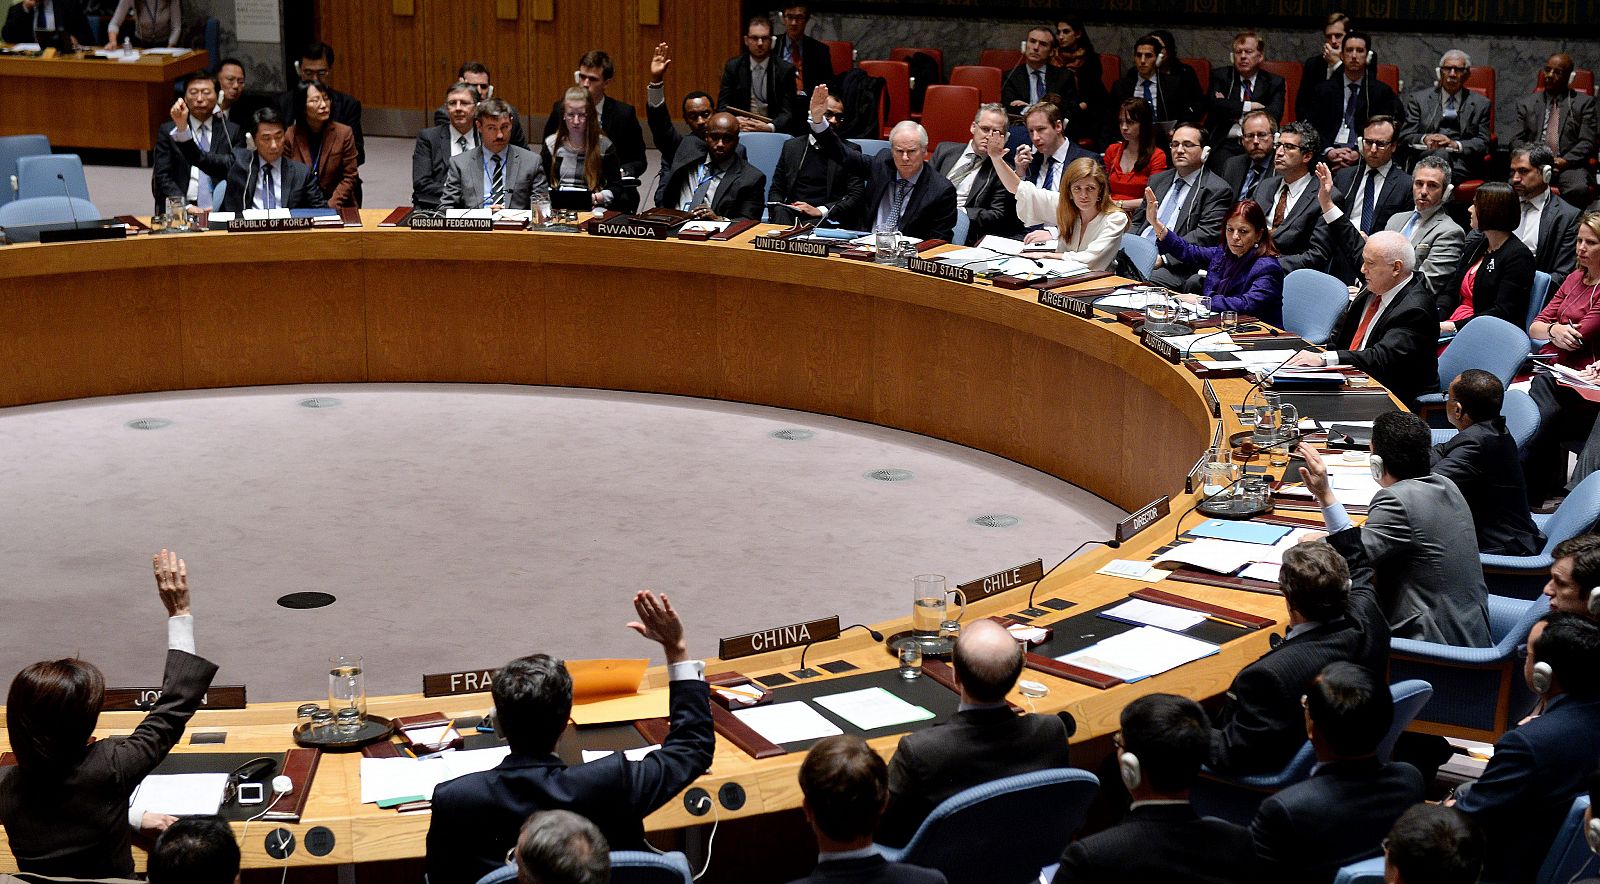 Vista del Consejo de Seguridad de la ONU durante su análisis de la situación de los derechos humanos en Corea del Norte.